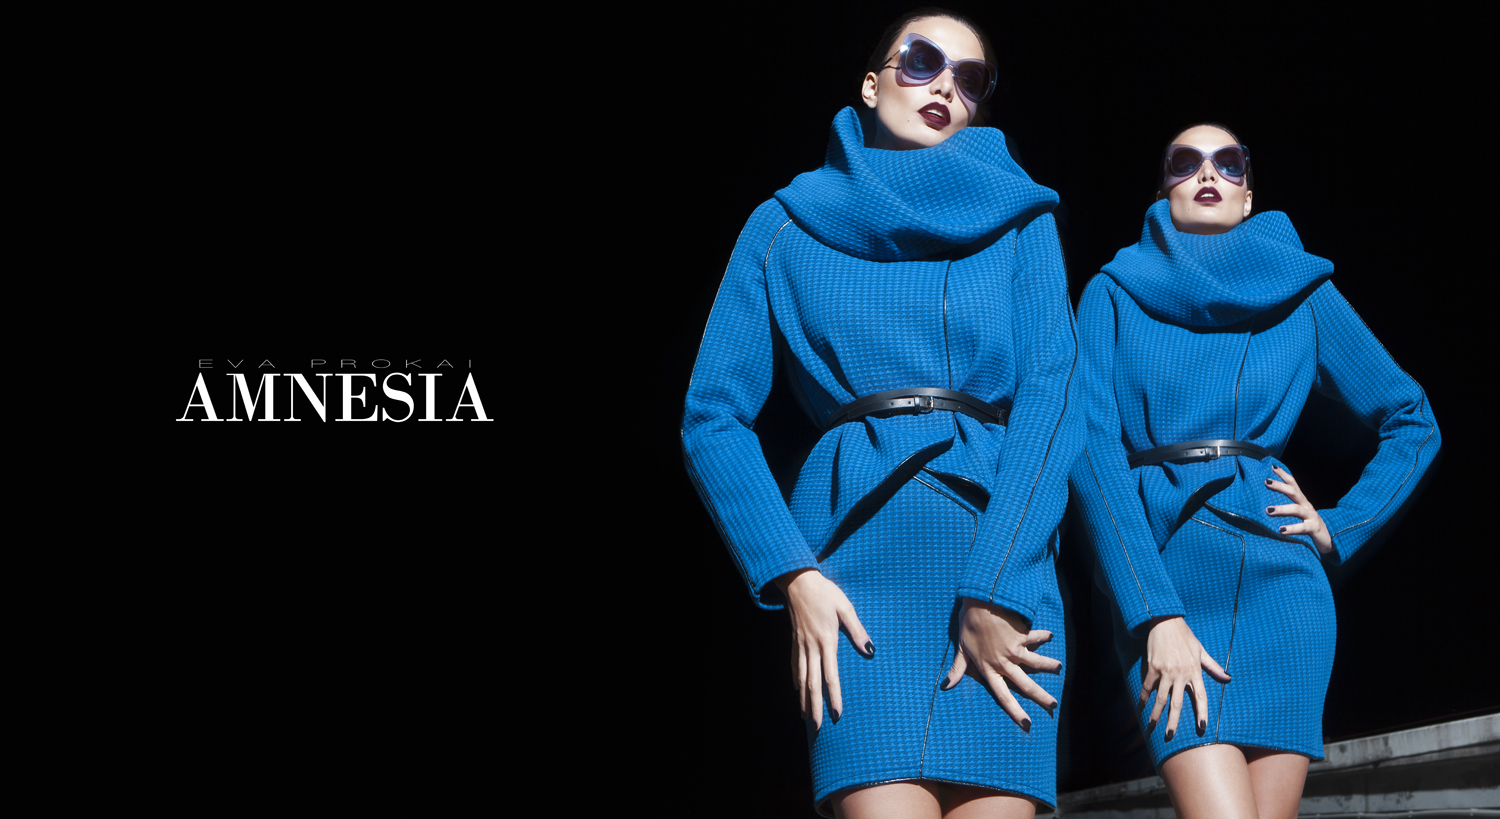 Az AMNESIA őszi-téli kampányfotóin ismét a márka már jól ismert, kedvenc modellje, a csodálatos Varga-Dobár Éva, és Pintér Vivien, az ICON modellje látható. 